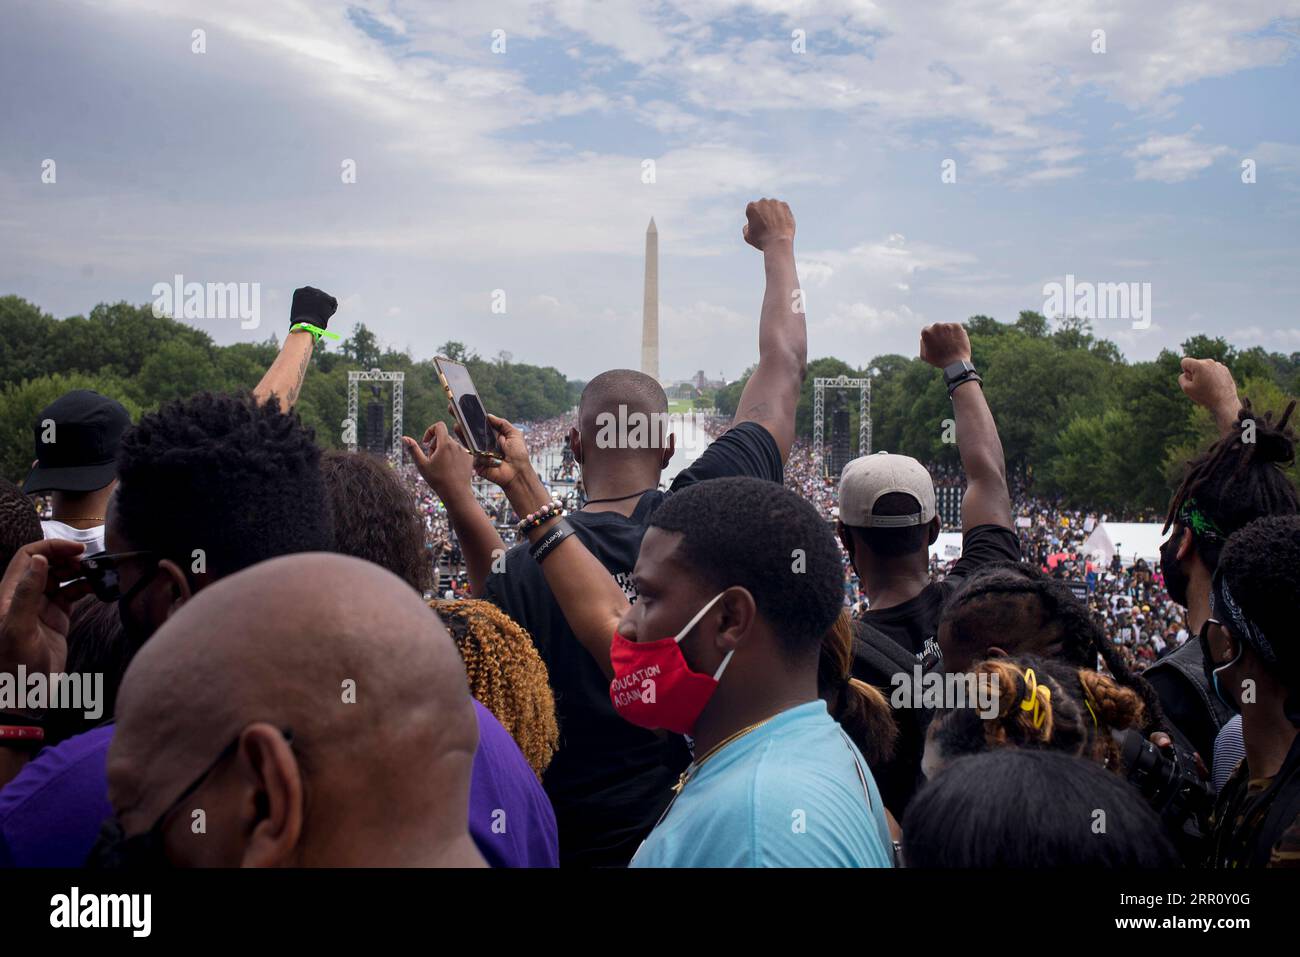 200829 -- WASHINGTON, D.C., 29 agosto 2020 -- i manifestanti si riuniscono al Lincoln Memorial per l'impegno March: Get Your Knee Off Our Necks event a Washington, D.C., Stati Uniti, 28 agosto 2020. Venerdì a Washington, D.C., sono scese folle massicce per protestare contro la brutalità e il razzismo della polizia. Una serie di oratori ha rivolto migliaia di manifestanti dai gradini del Lincoln Memorial, in occasione del 57° anniversario del famoso discorso i Have a Dream dell'icona americana dei diritti civili Martin Luther King Jr., nel 1963 marzo su Washington. Foto di /Xinhua U.S.-WASHINGTON, D.C.-PROTESTA AlanxChin PU Foto Stock